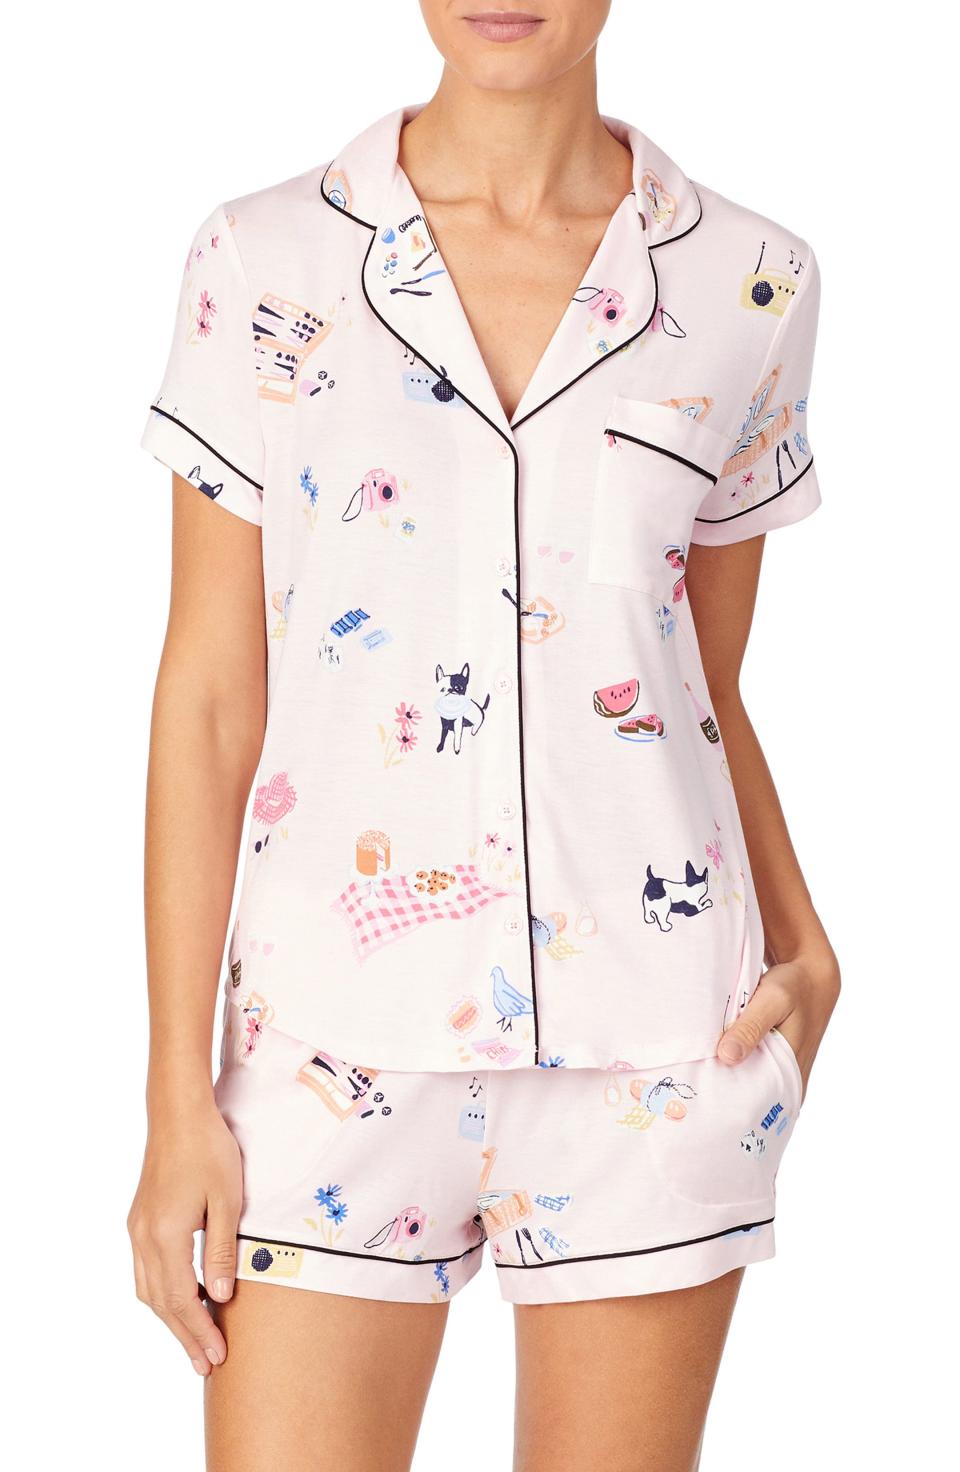 30) Kate Spade Pajama Set